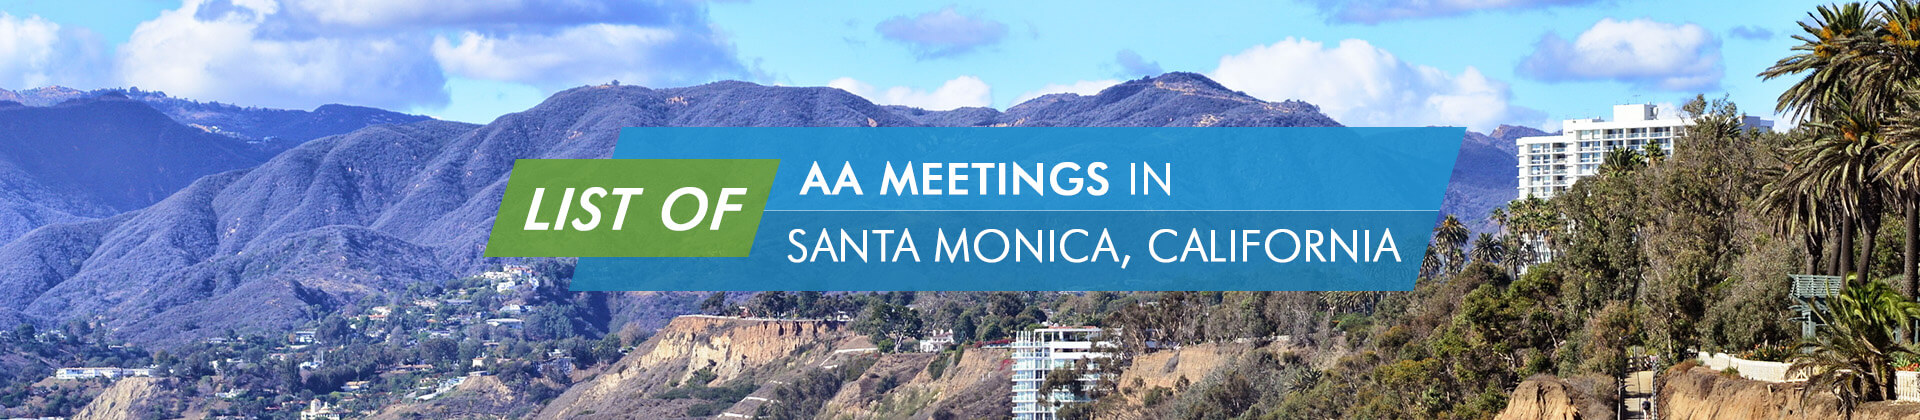 AA Meetings Santa Monica California